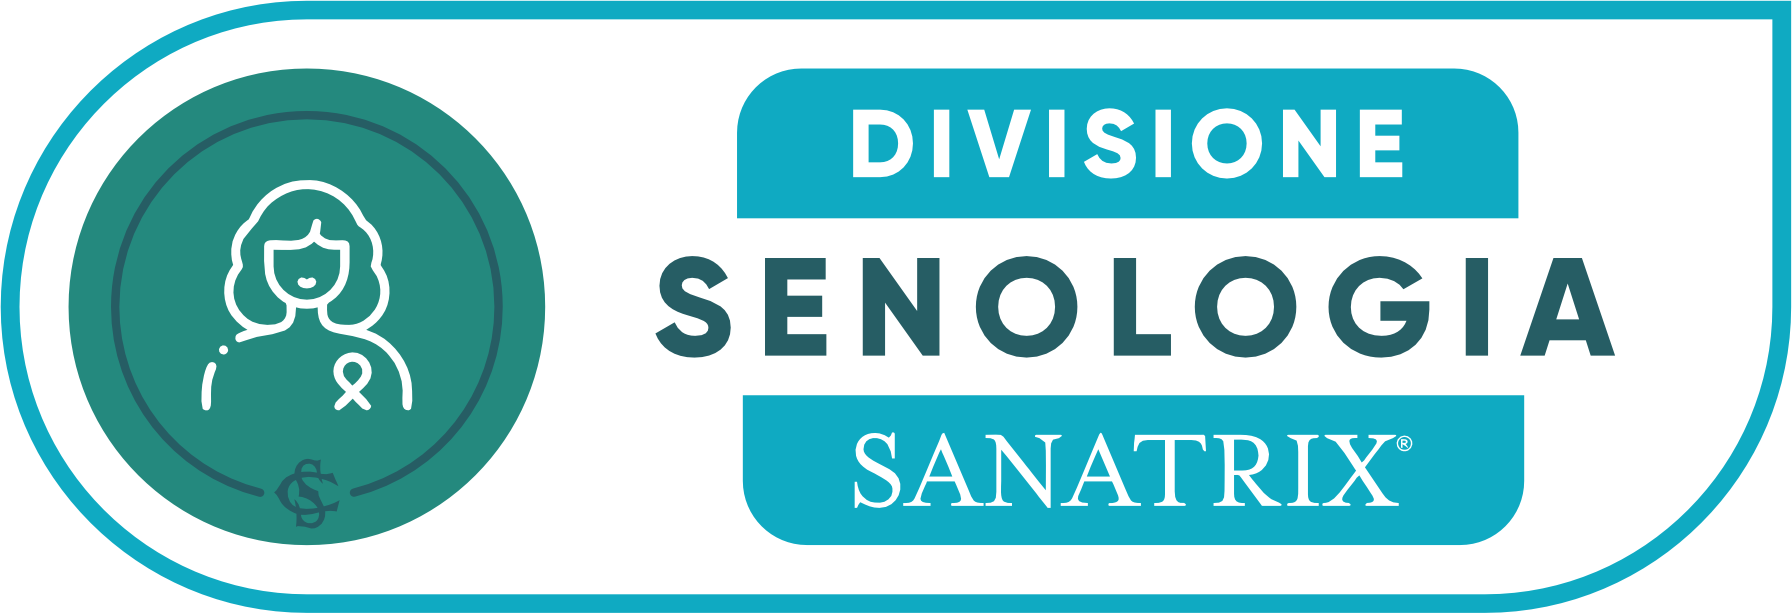 sanatrix_divisione_senologia